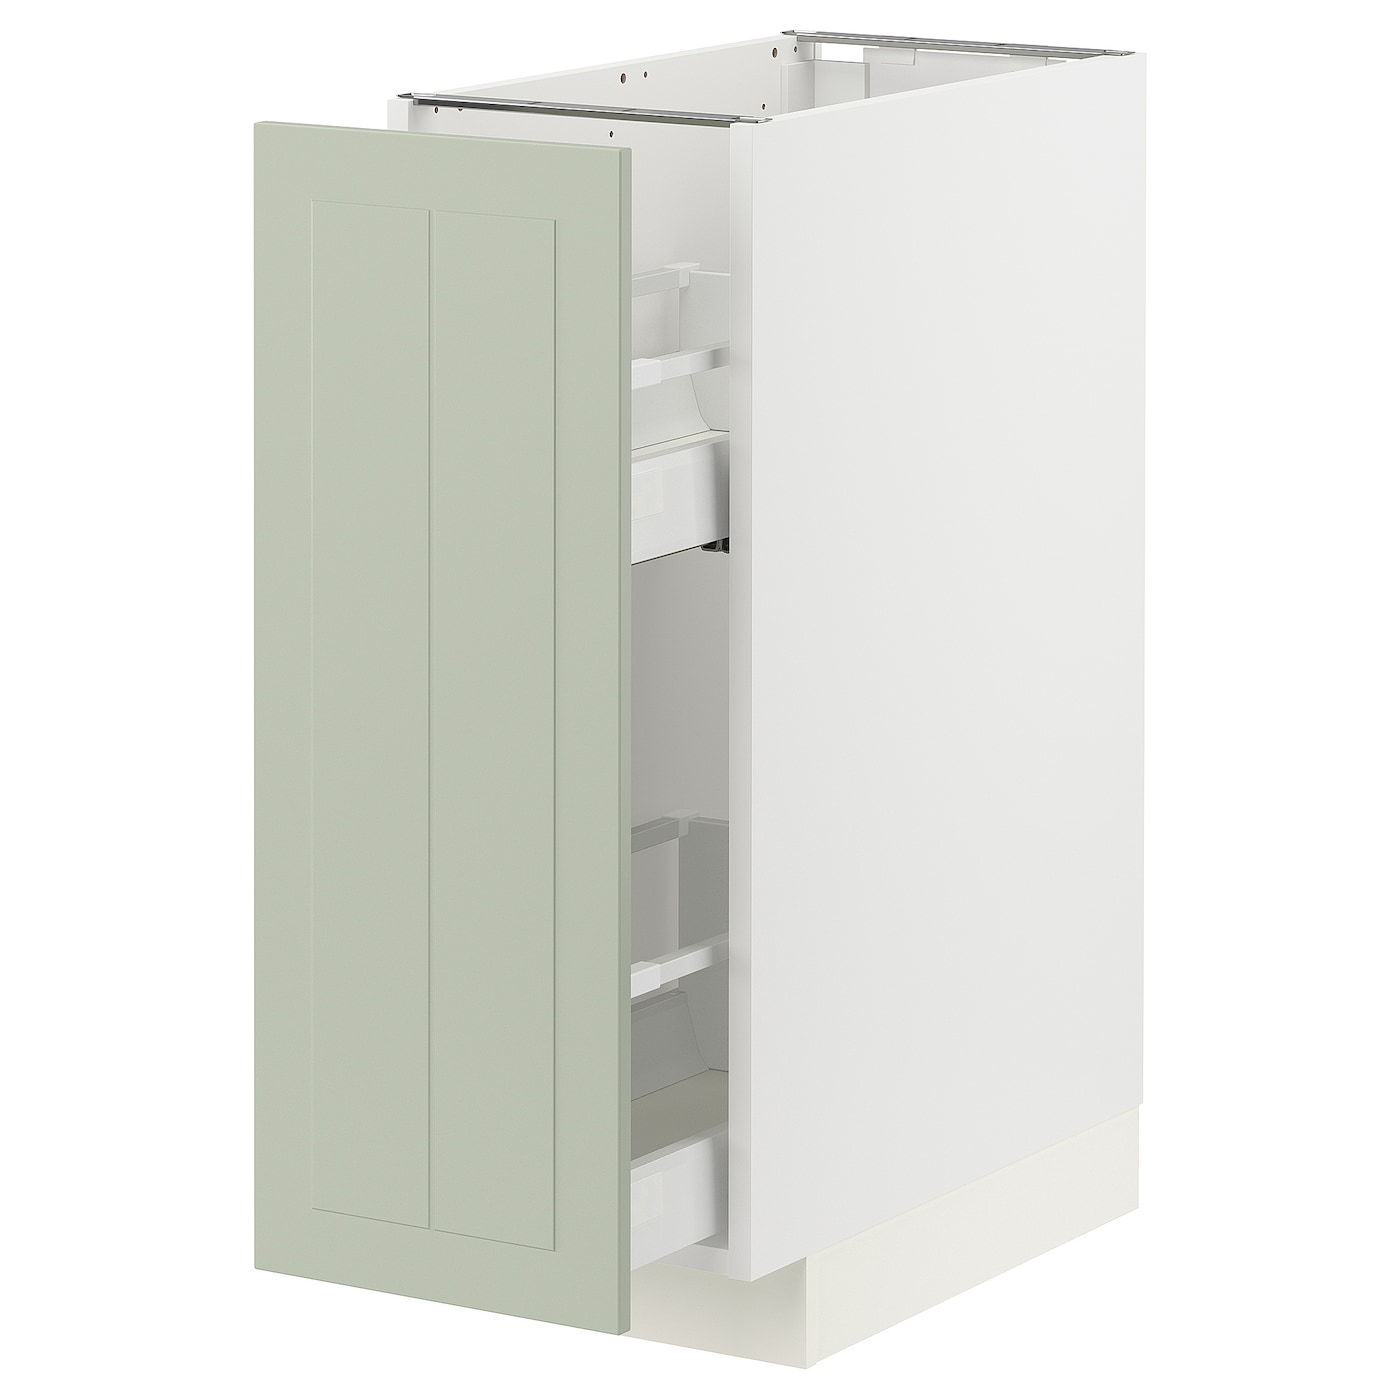 Напольный шкаф - IKEA METOD MAXIMERA, 88x62x30см, белый/светло-зеленый, МЕТОД МАКСИМЕРА ИКЕА